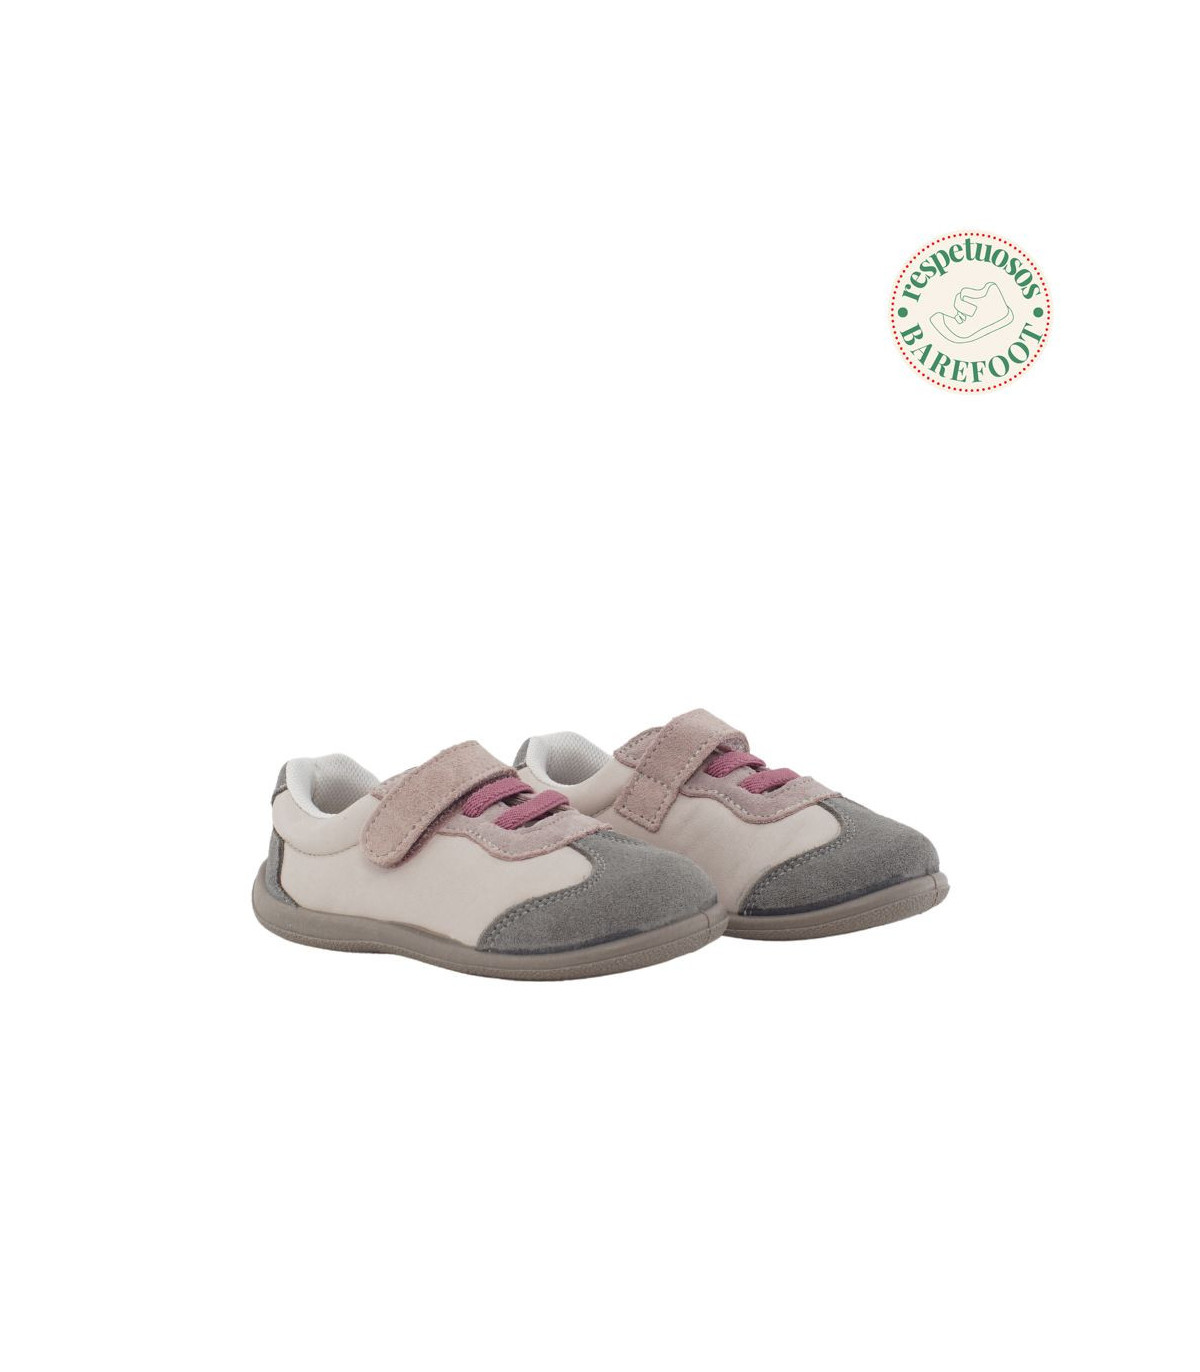 Zapatilla barefoot niña blanca y rosa metalizada